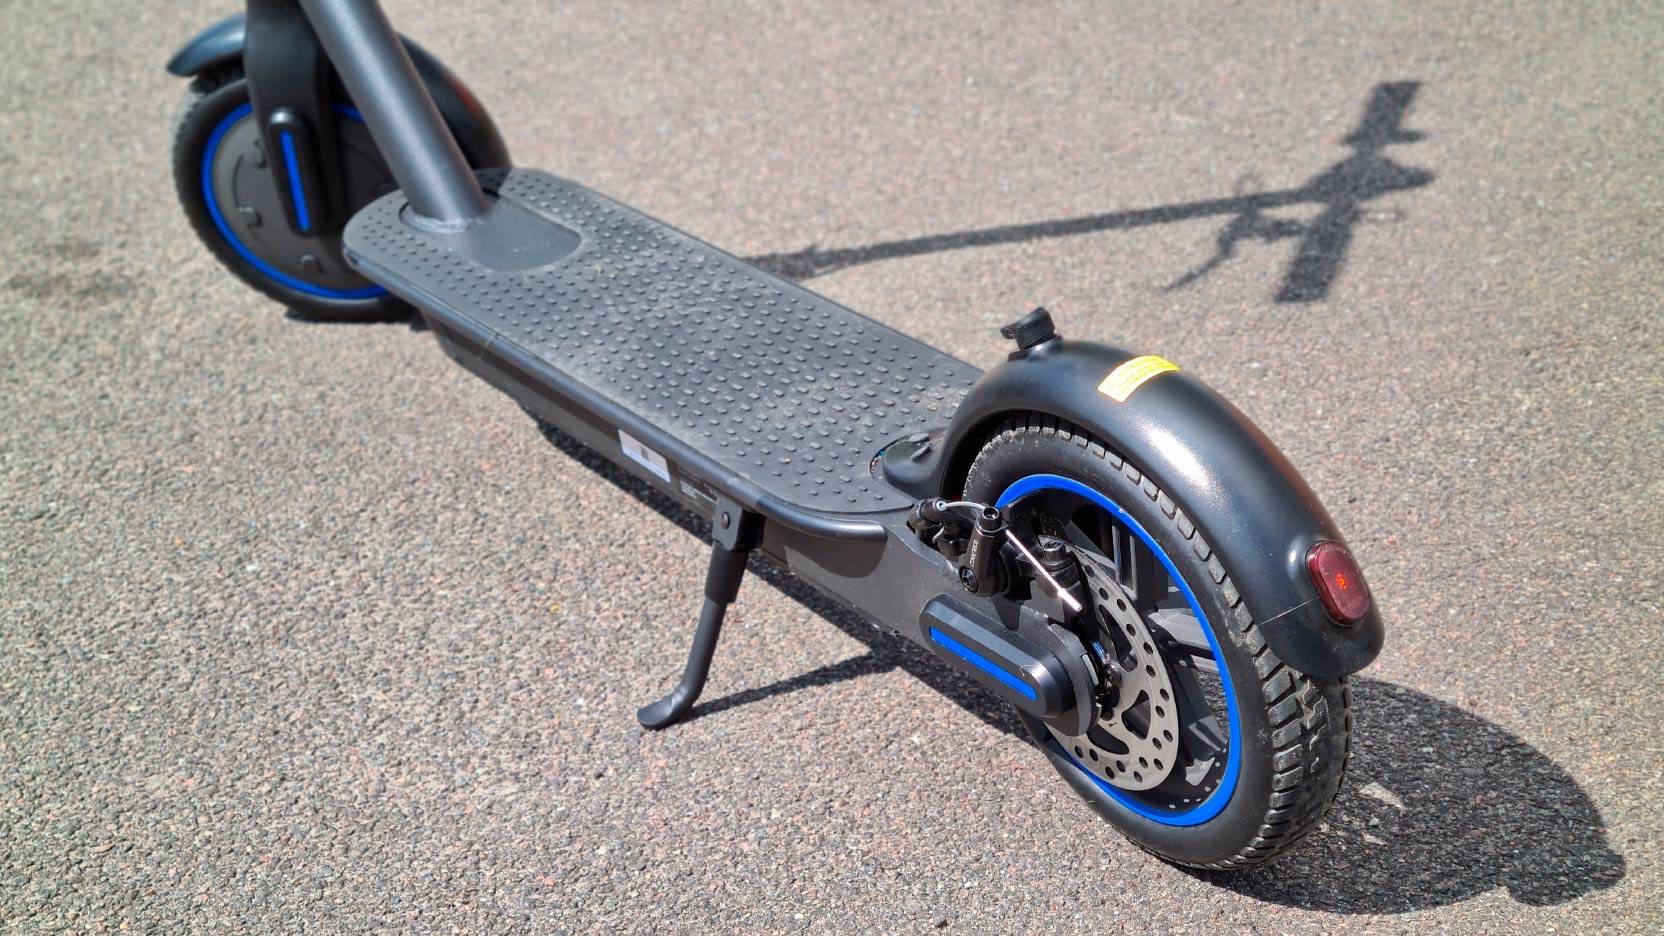 Billede fra testen af el løbehjul E-WAY E500 med fokus på det mønstrede punkterfri baghjul og skivebremsen